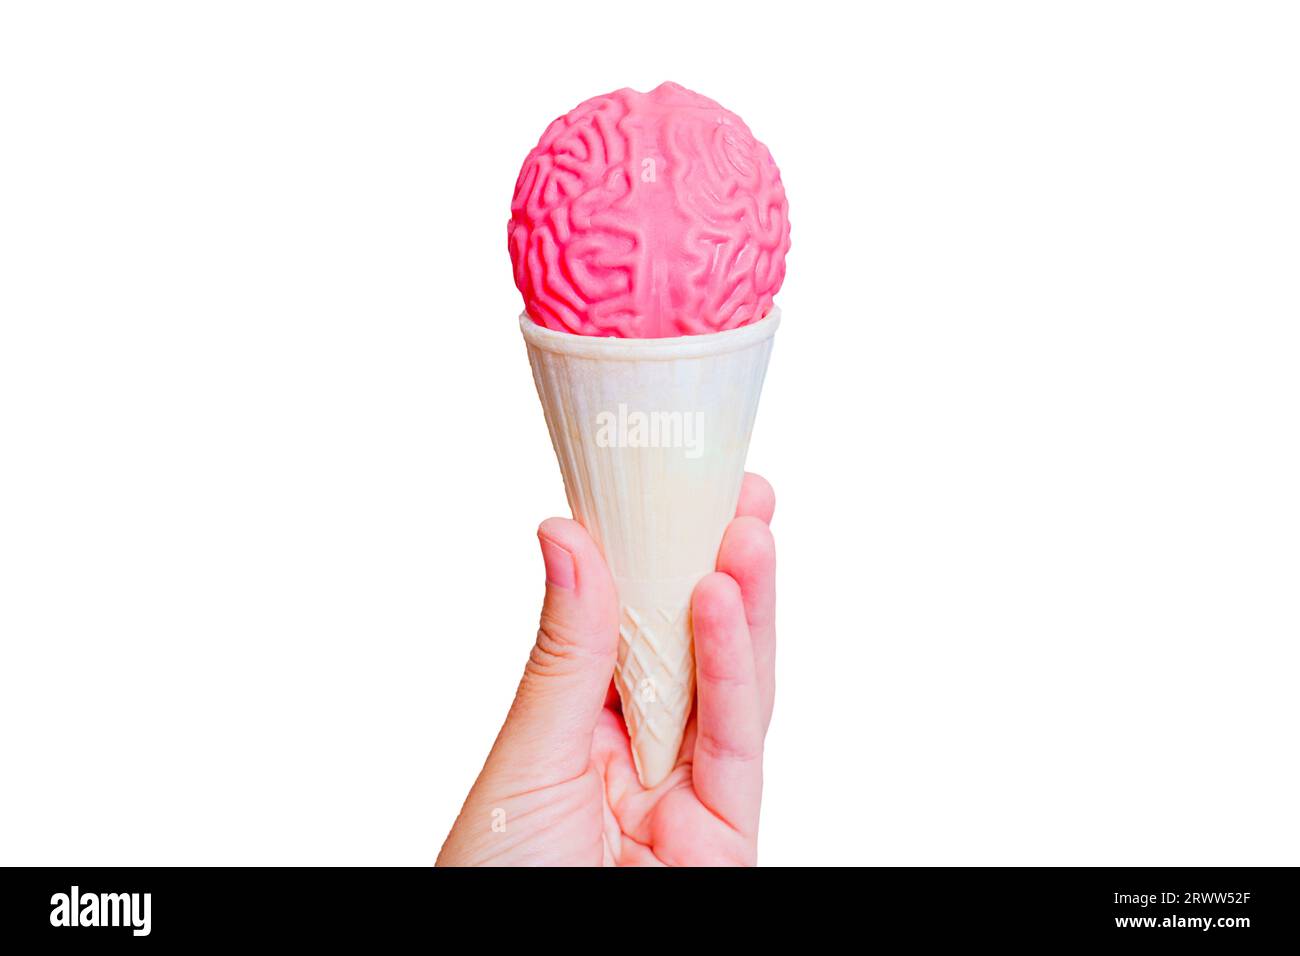 Eiskegel mit einem geleeartigen menschlichen Hirnmodell in Hand isoliert auf weißem Hintergrund. Durchdachtes süßes Leckerli-Konzept. Stockfoto